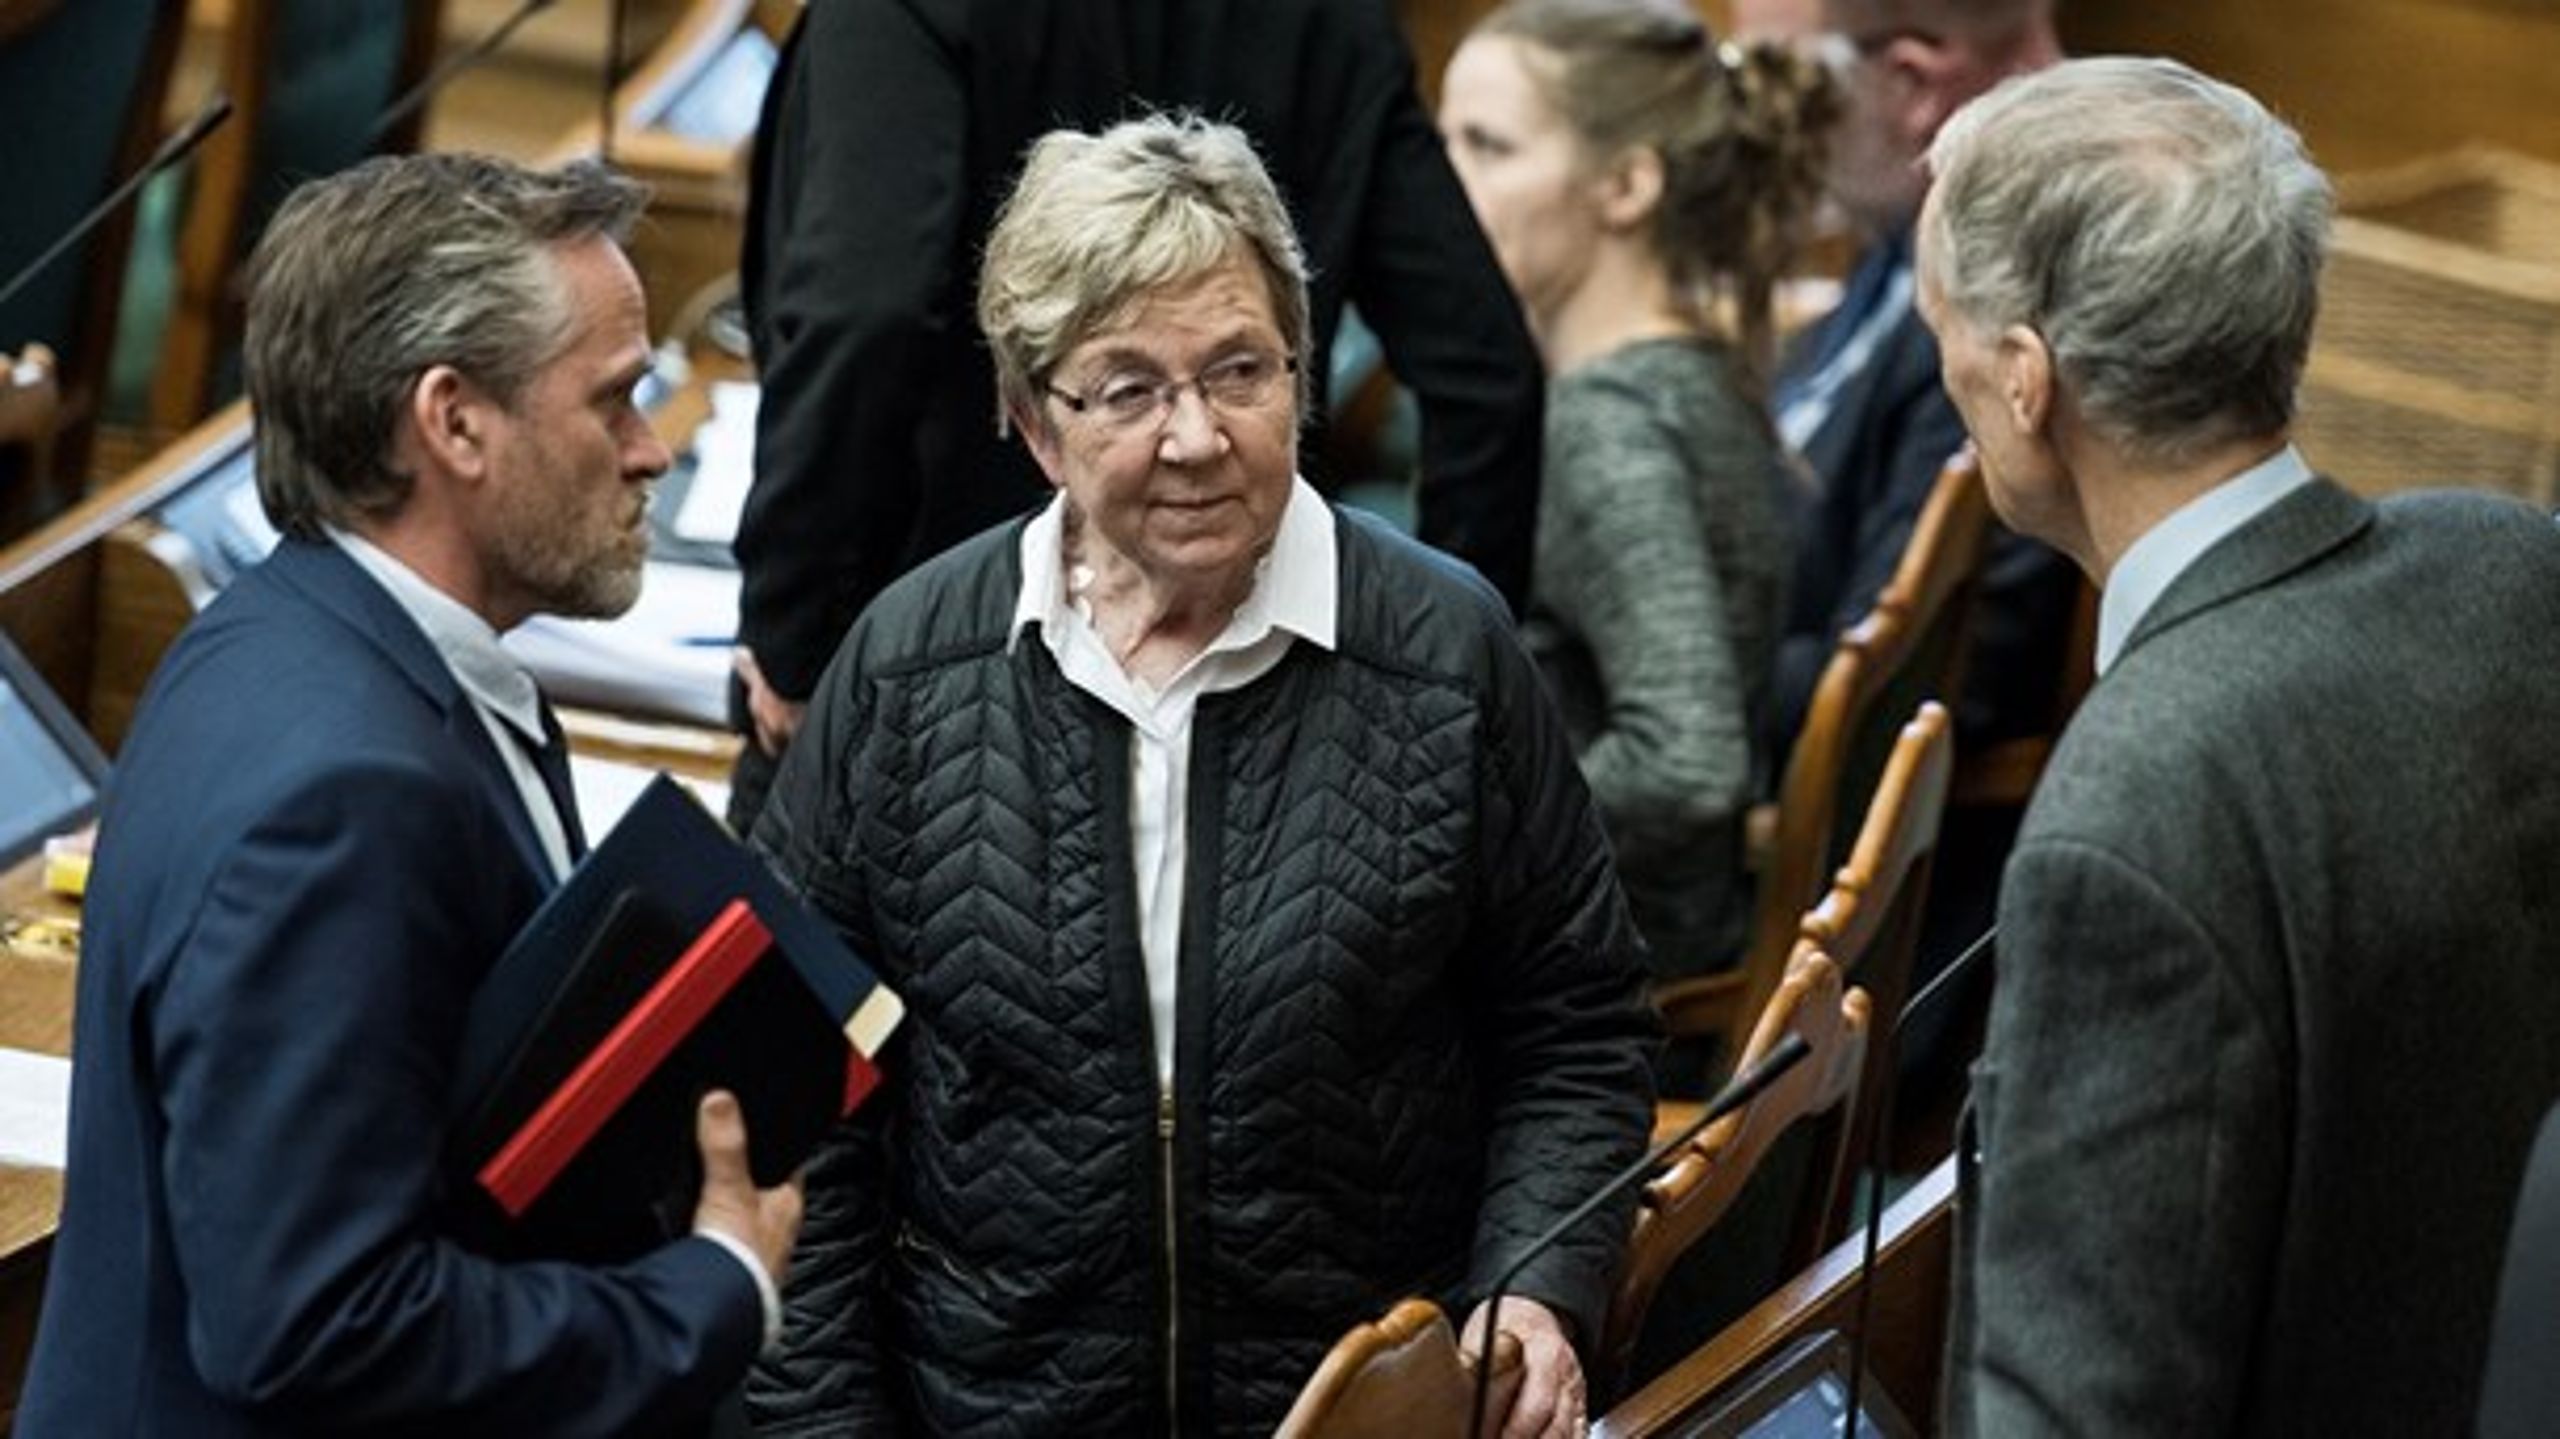 Marianne Jelved og Bertel Haarder er blandt de folketingsmedlemmer, der har et ekstra navn, som de færreste kender til.